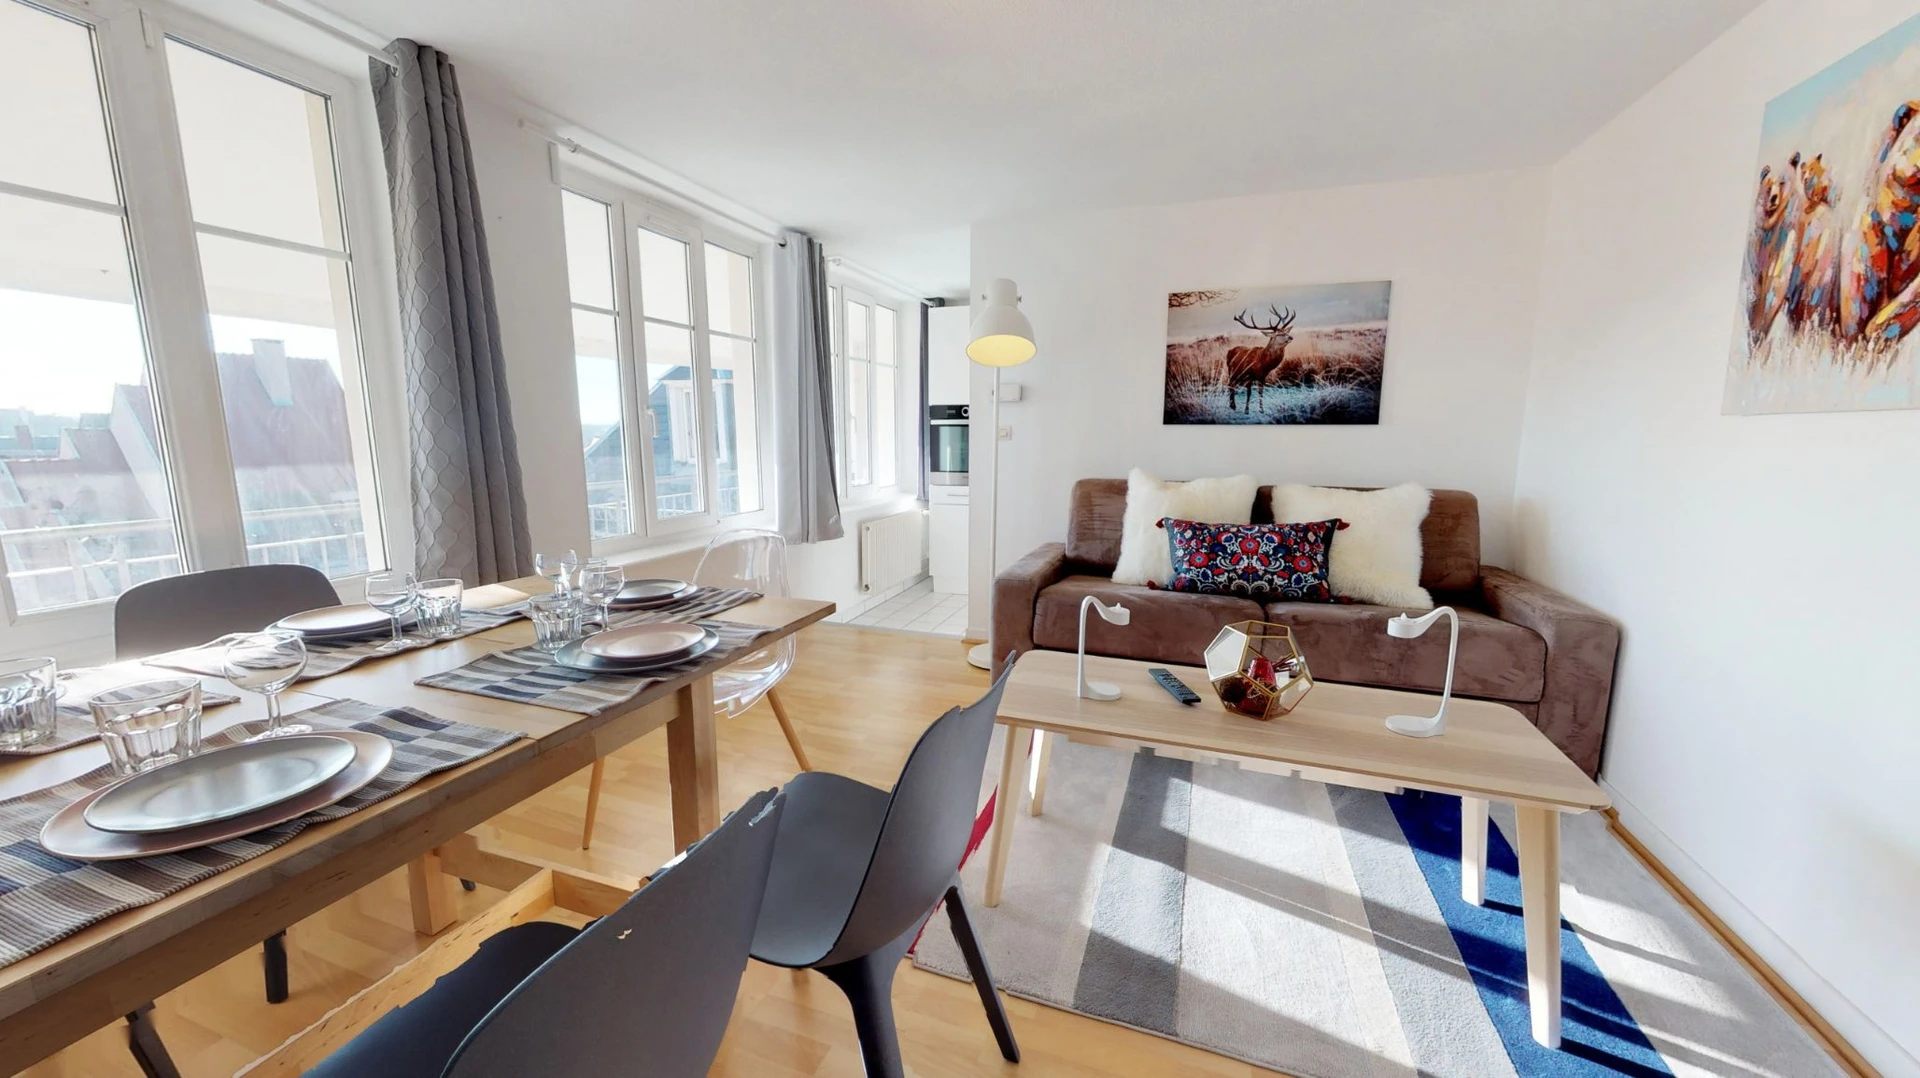 Quarto para alugar num apartamento partilhado em Estrasburgo